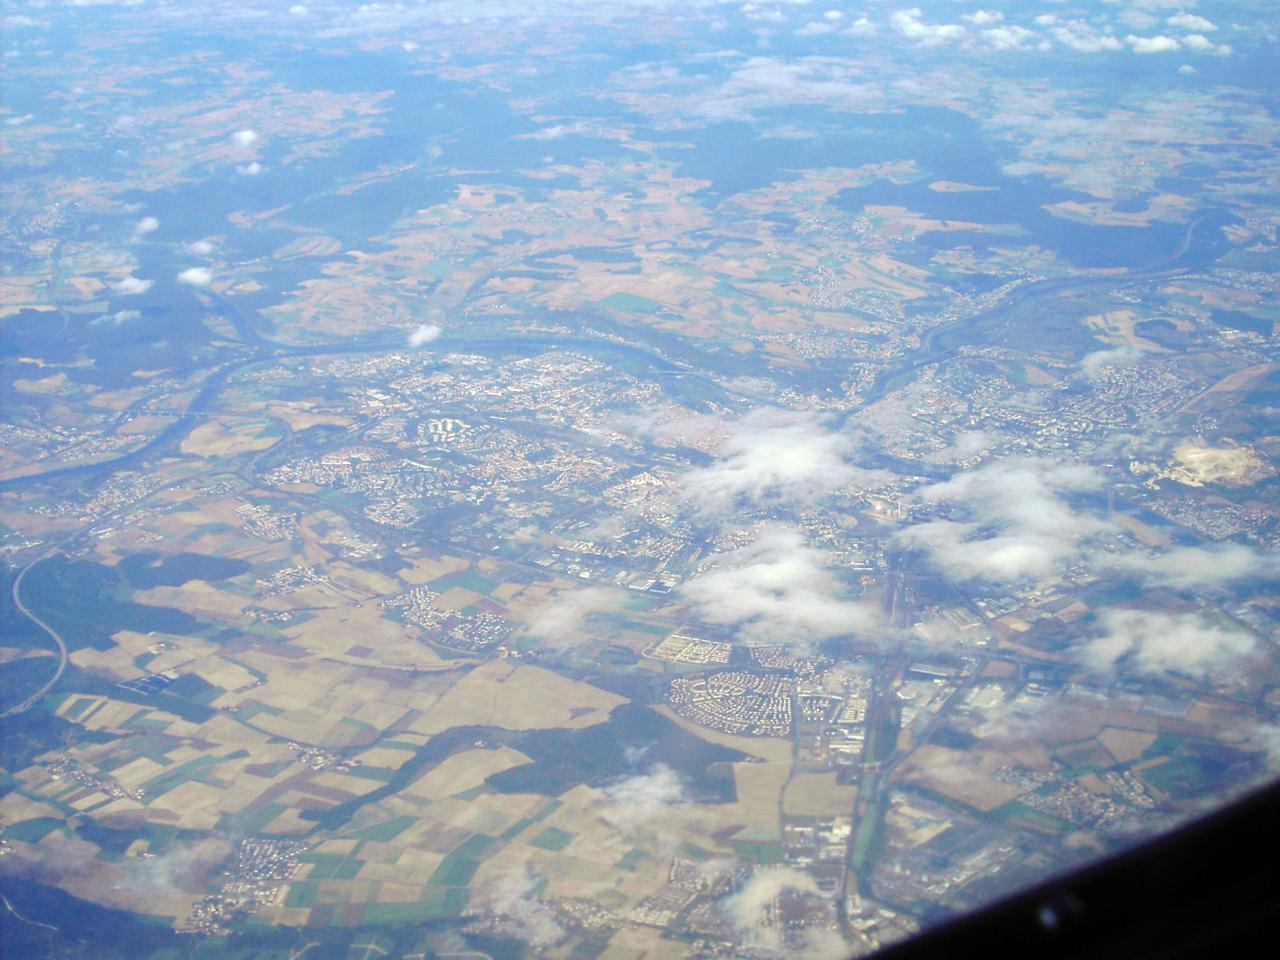 Unsere Heimat vom Flugzeug aus gesehen